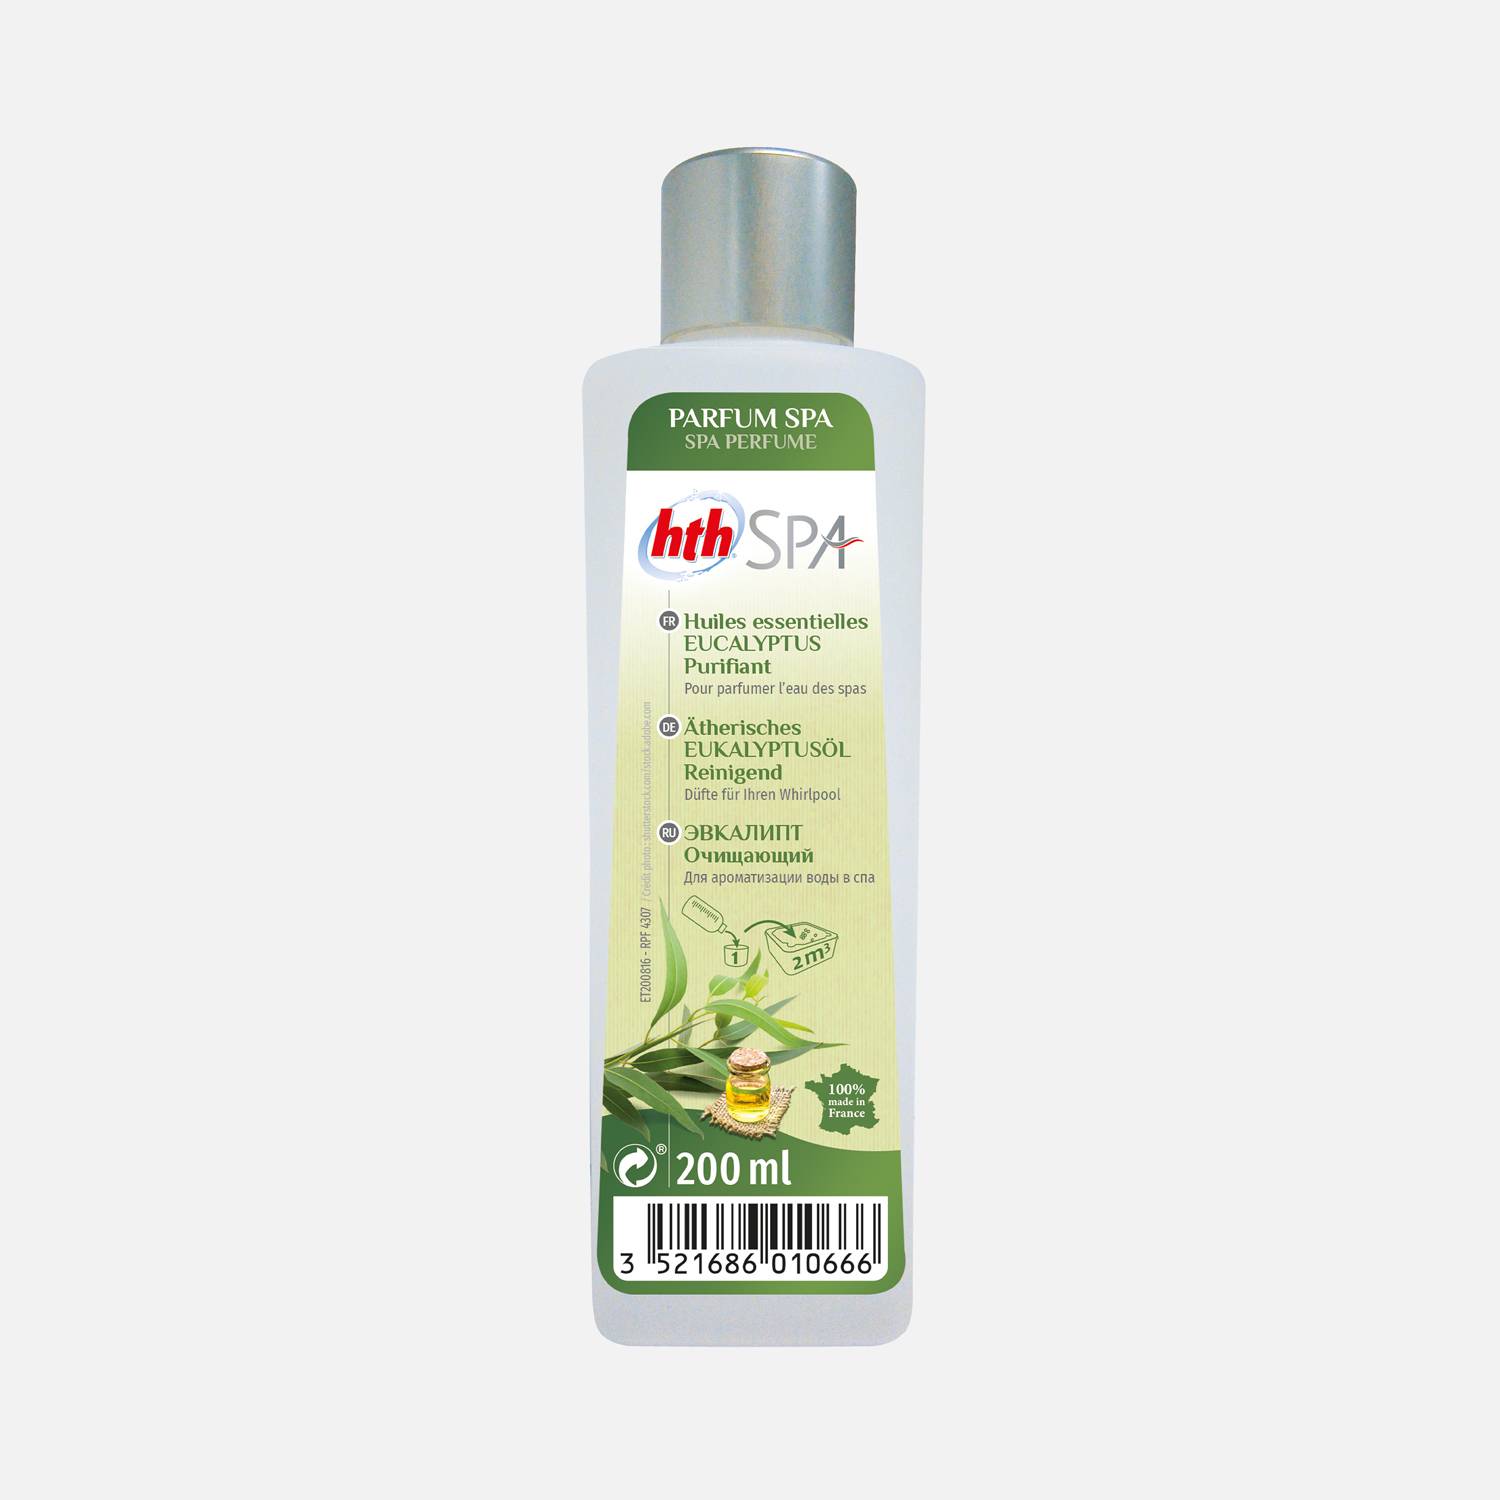 Parfum aux huiles essentielles d'eucalyptus pour SPA 200mL – HTH, odeur purifiante, parfum d'origine naturelle, élaboré en France   Photo1